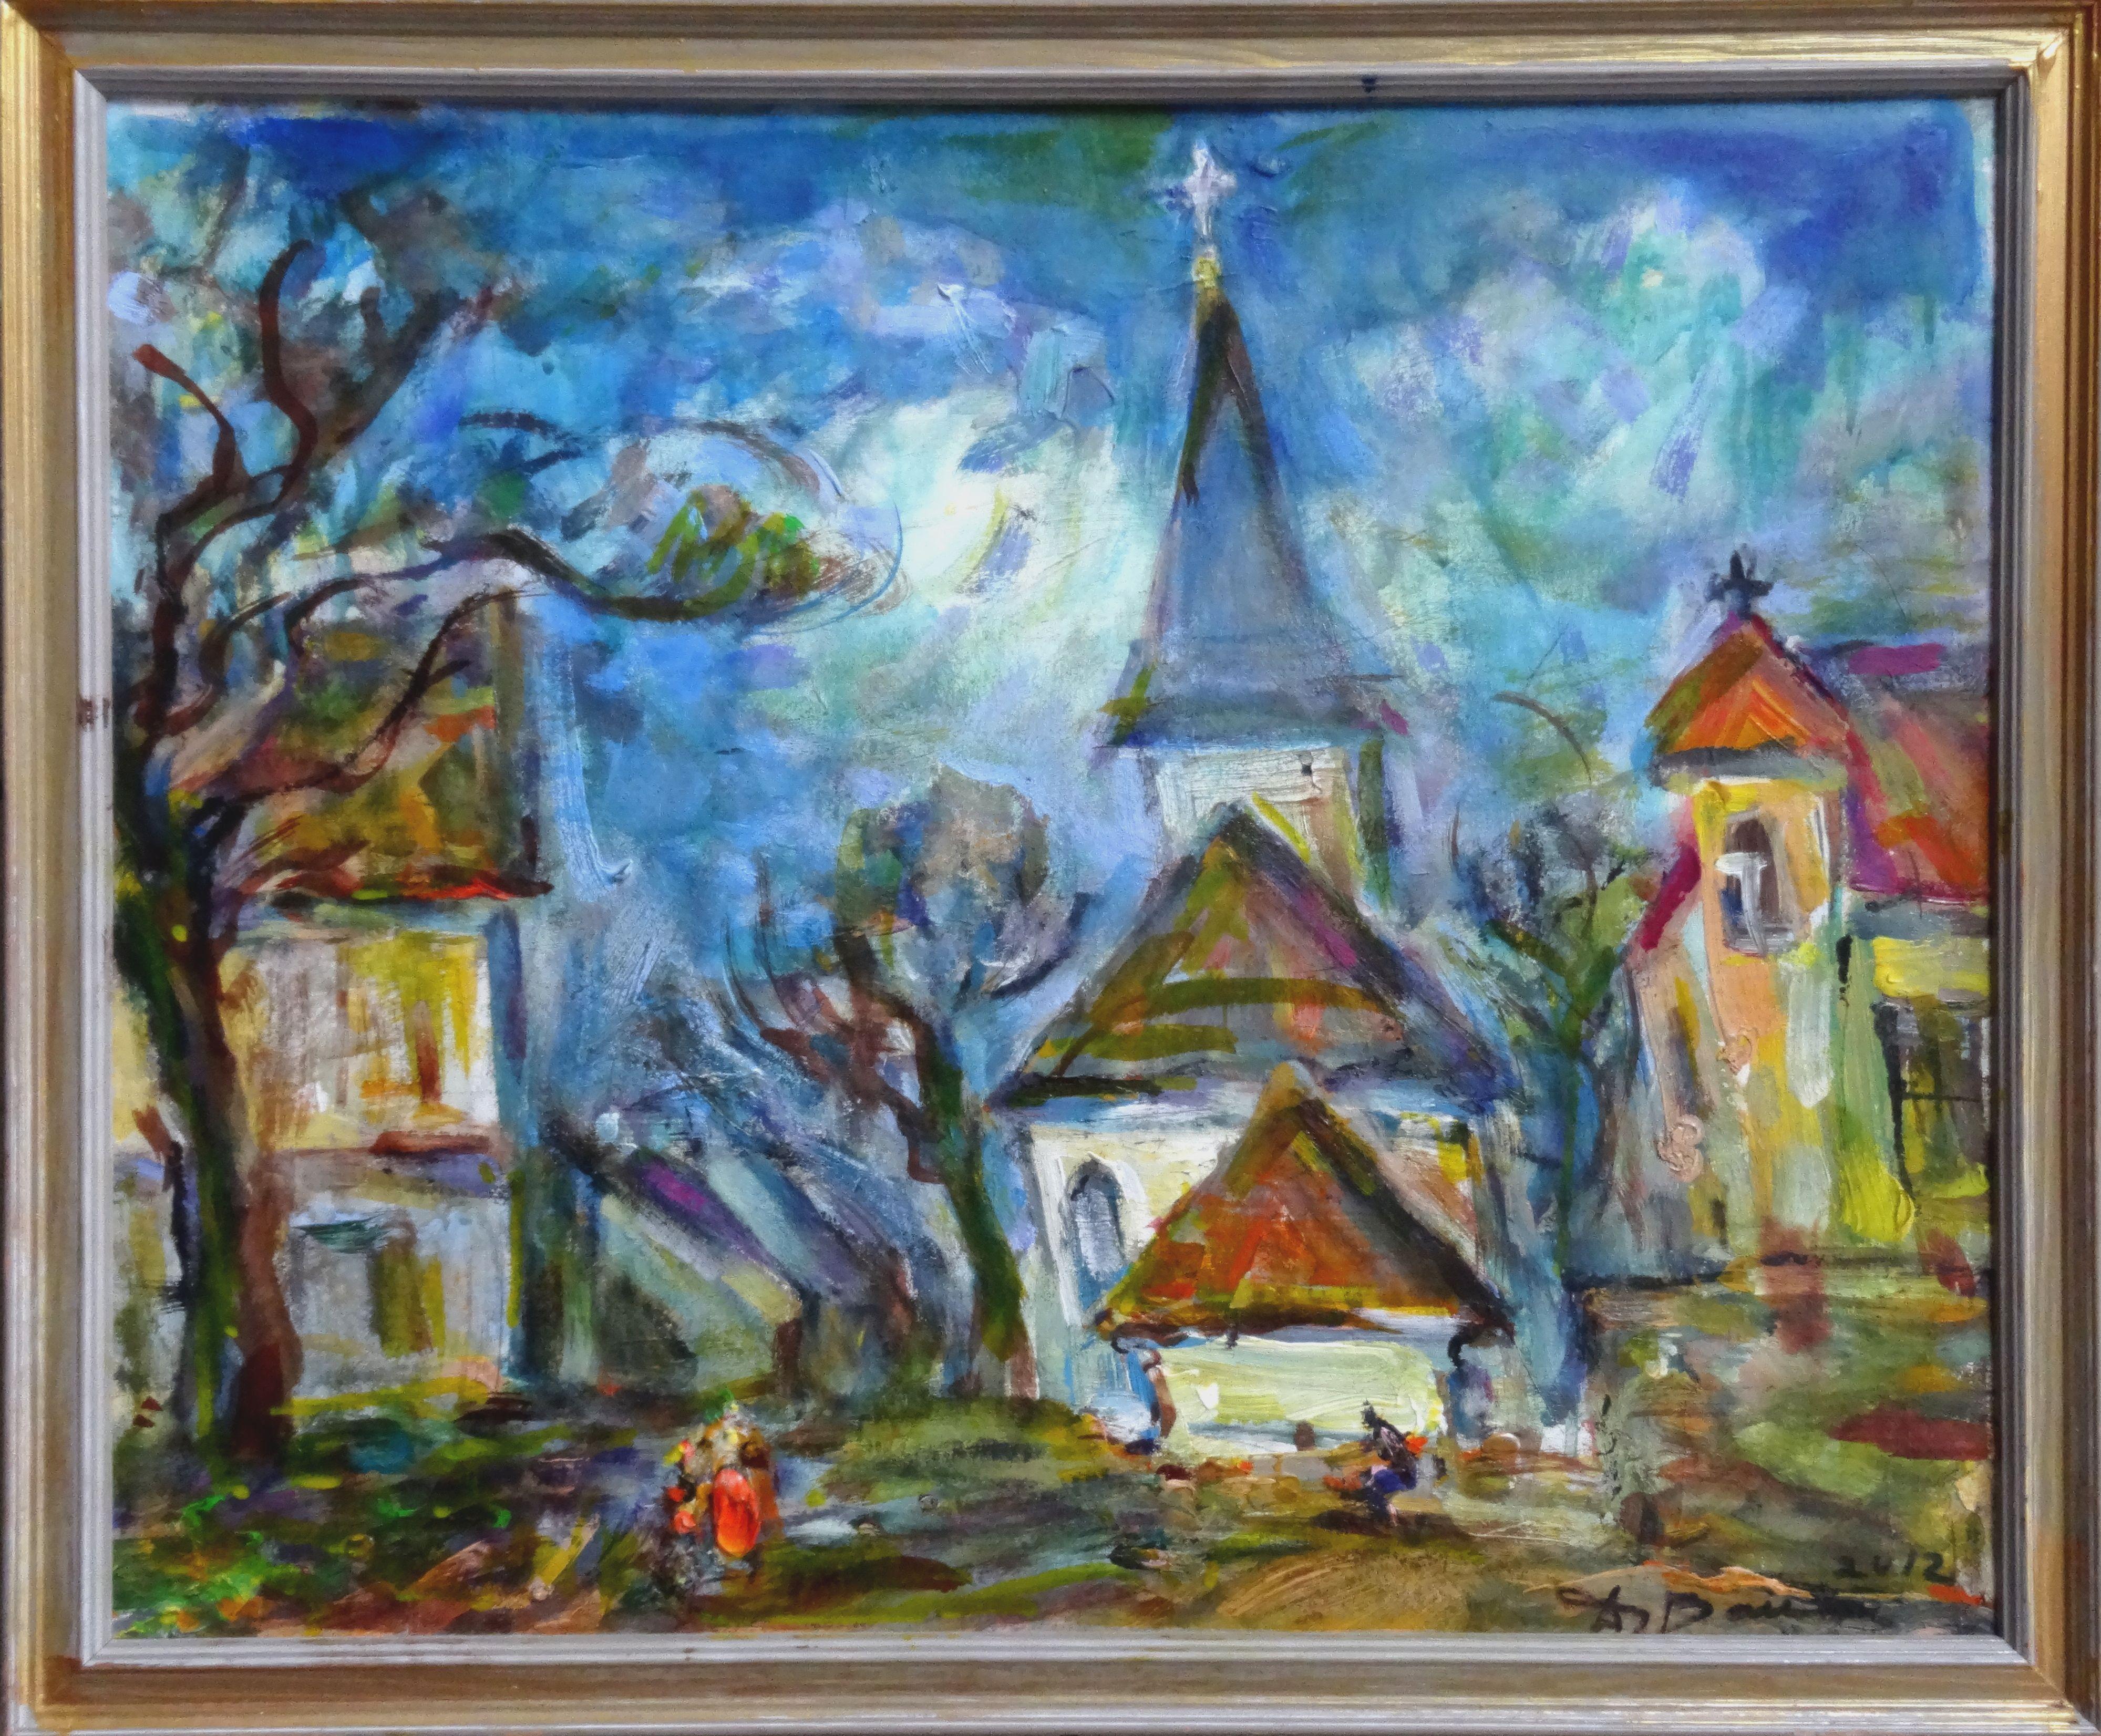 Rose Square par église. 2012, acrylique sur papier, 44x55 cm - Painting de Dzidra Bauma